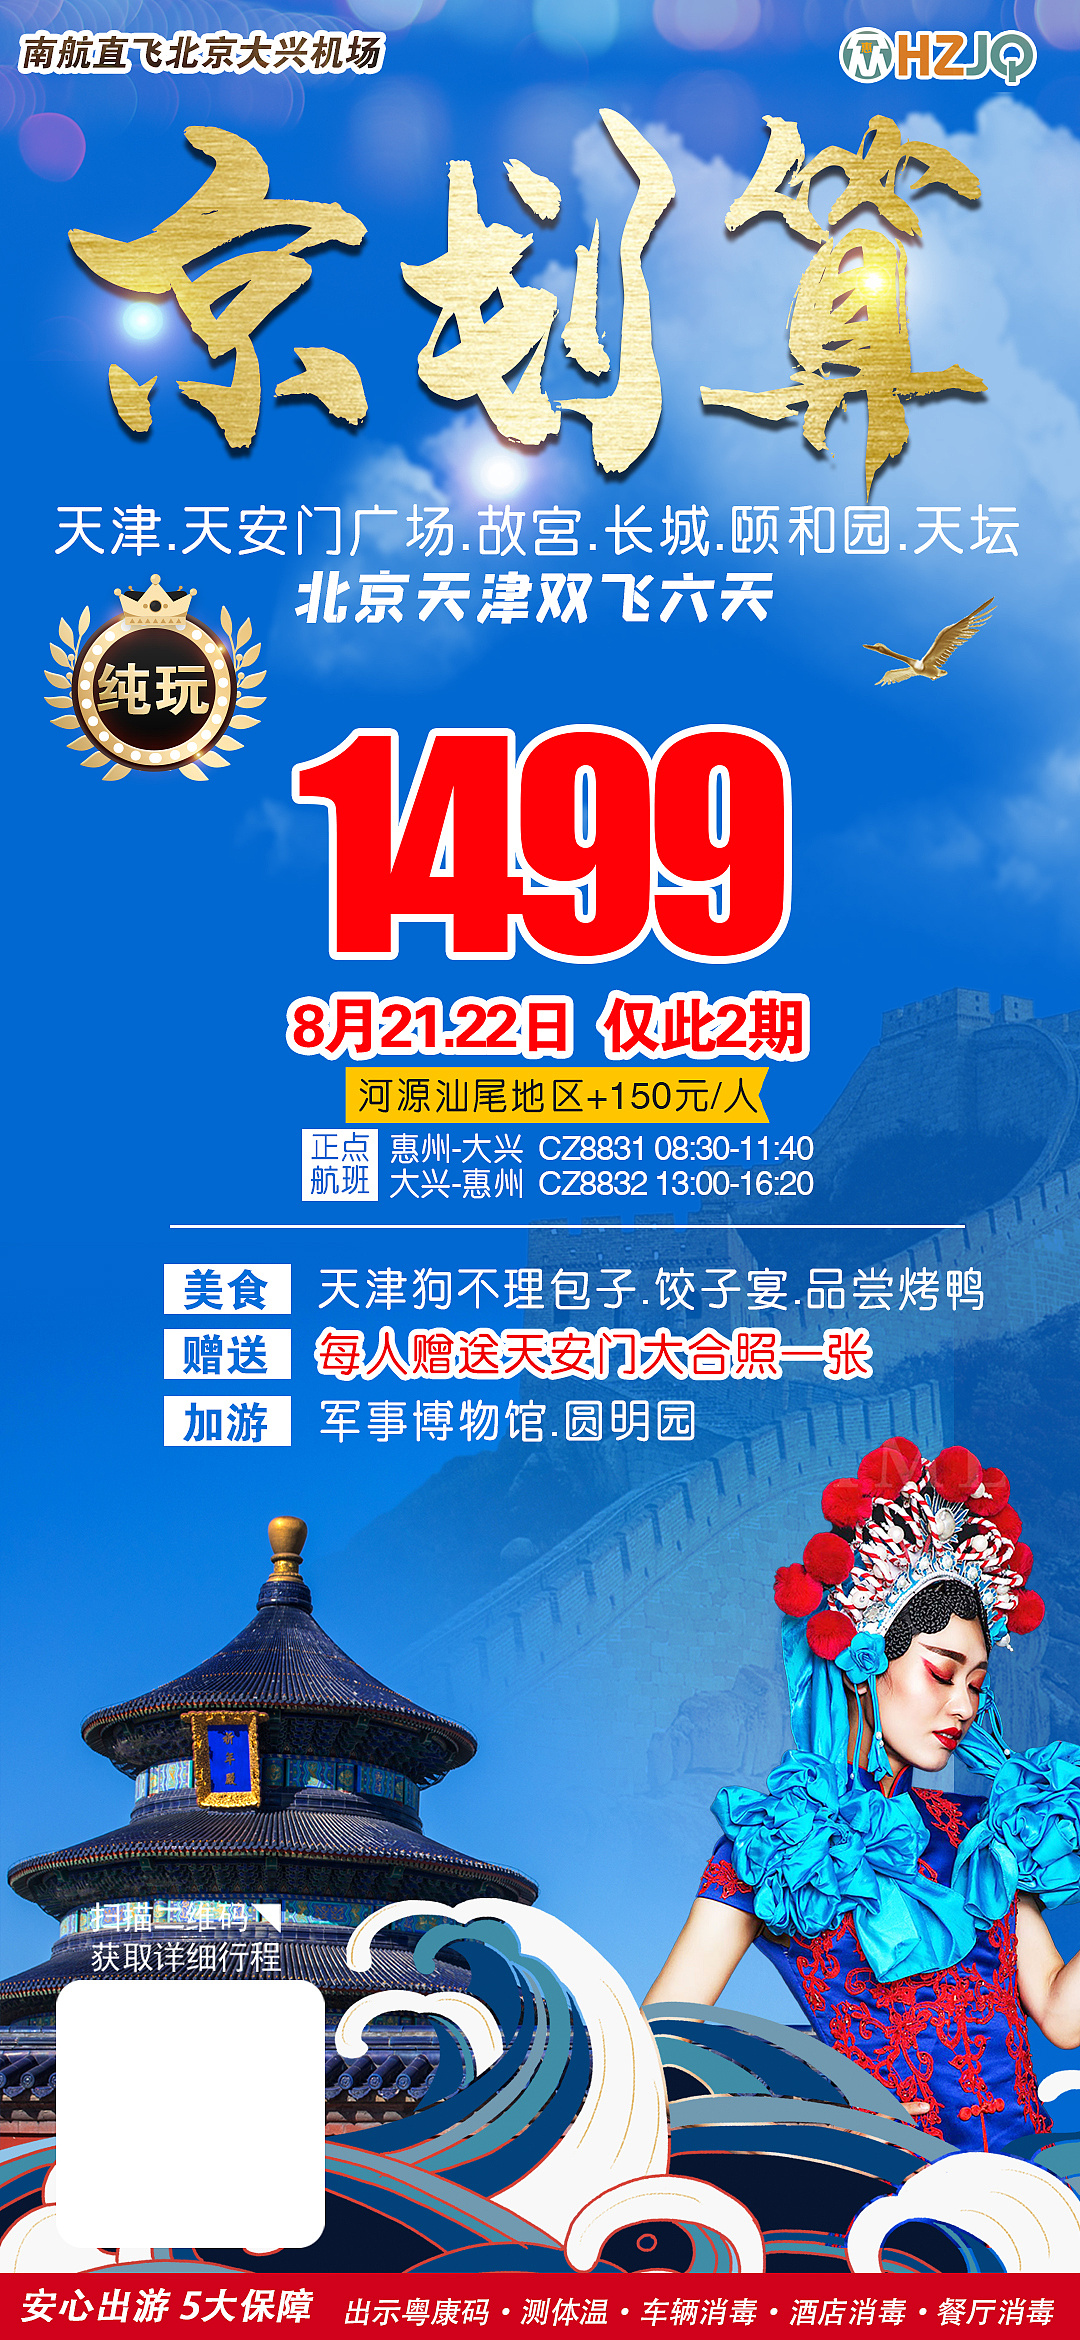 北京宣传海报设计背景素材免费下载 - 觅知网